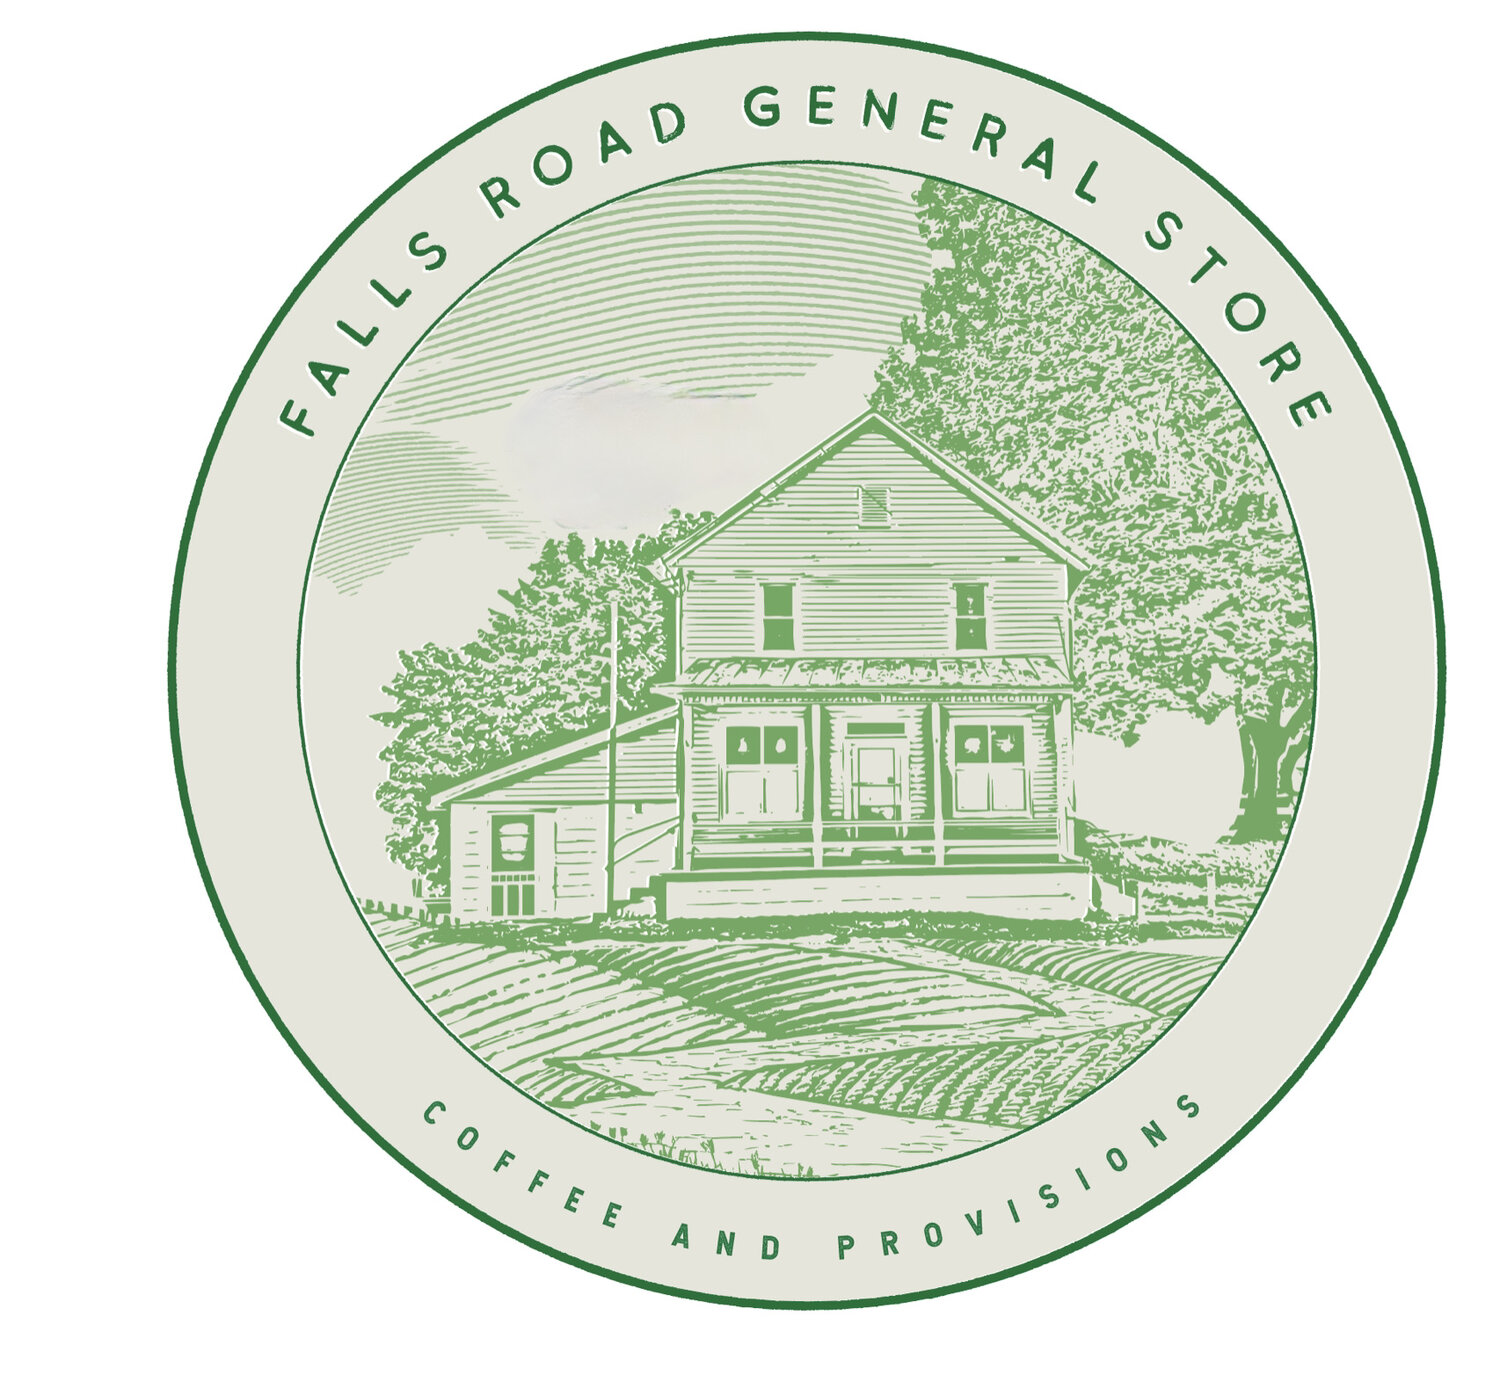 Falls Road General Store